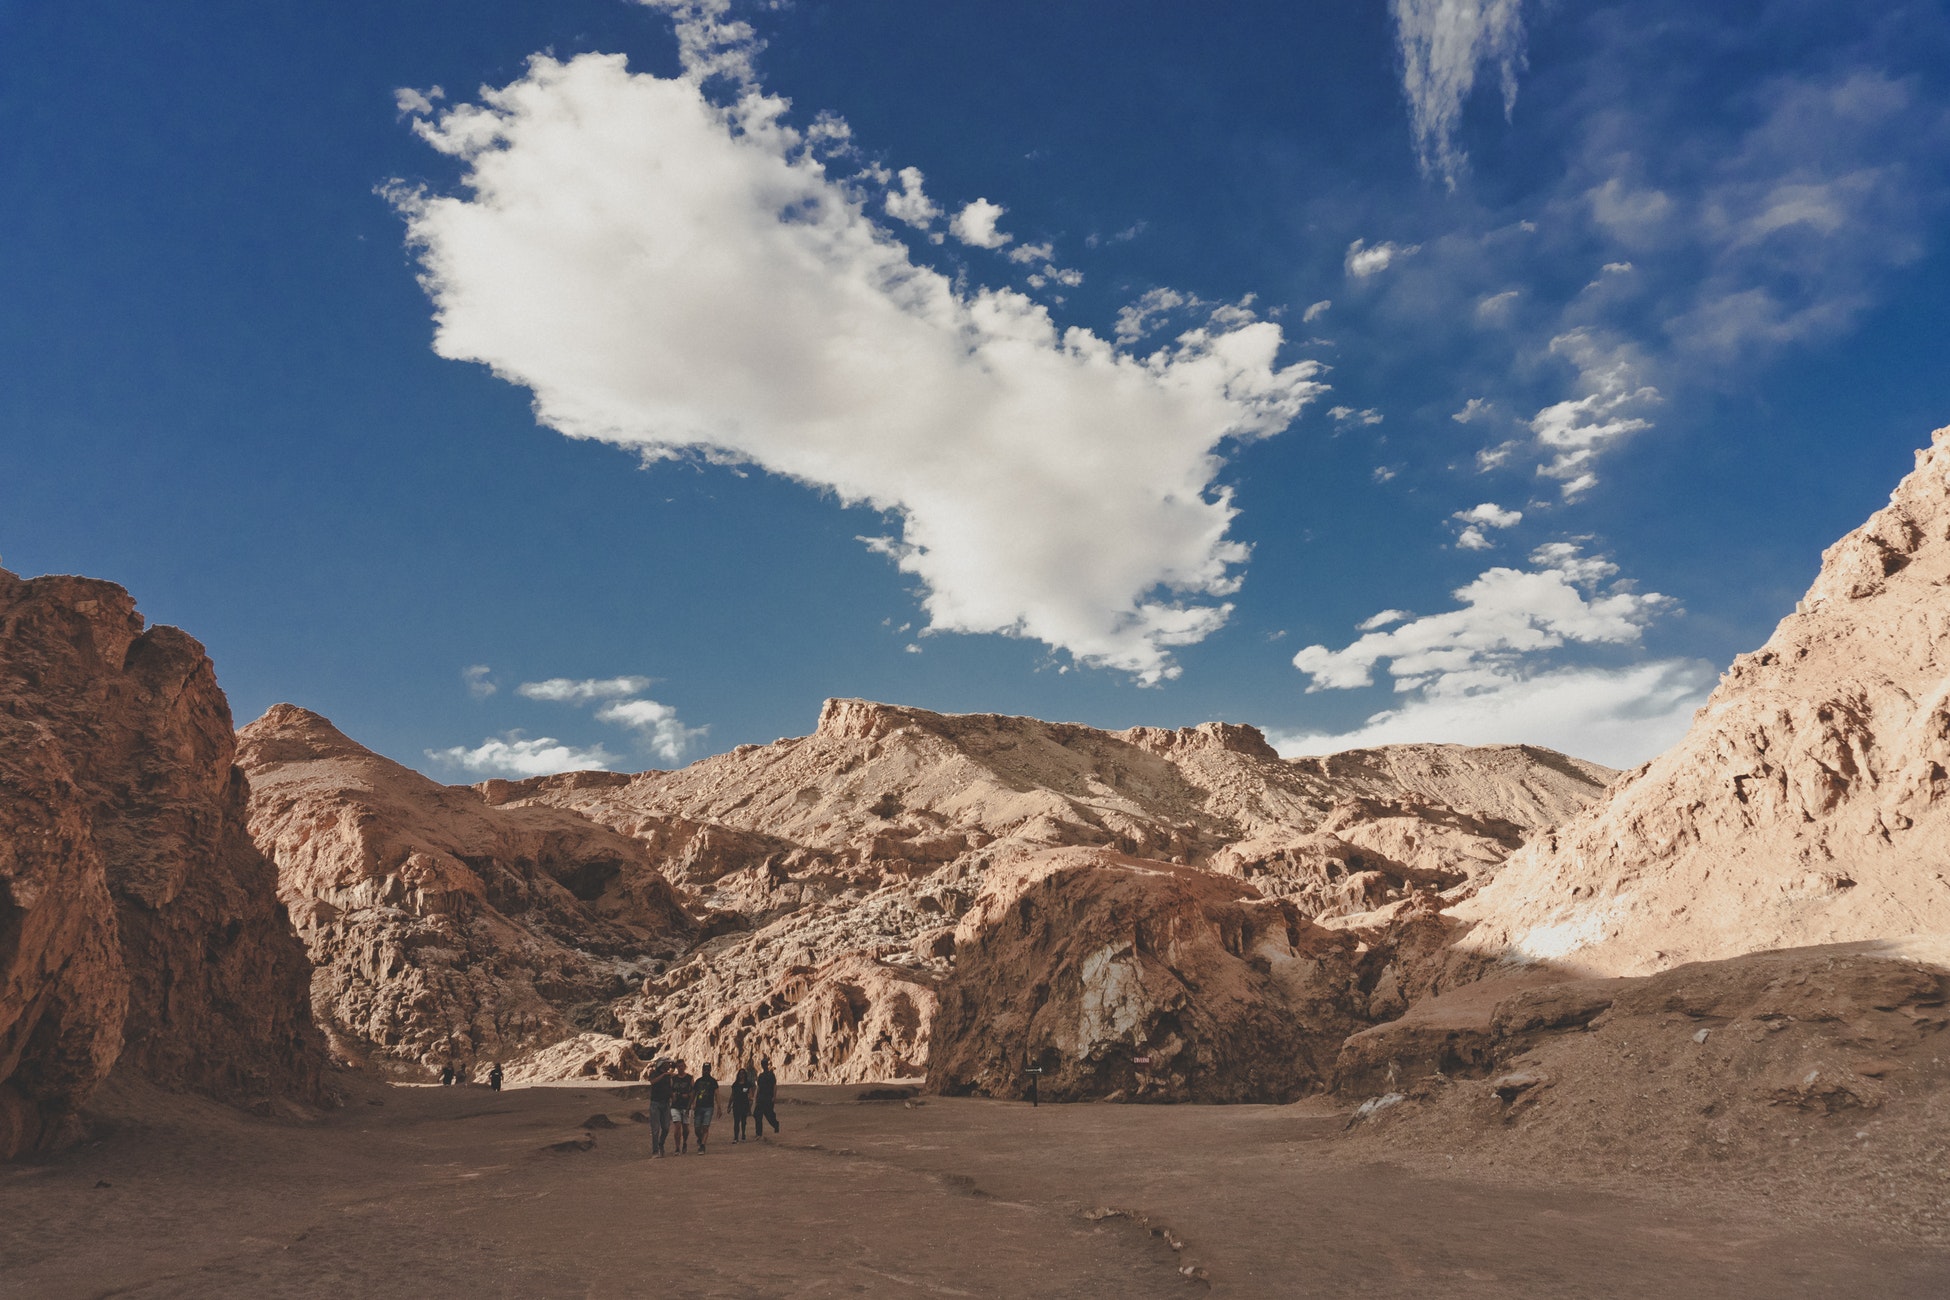 Men walking around in desert under blue sky.